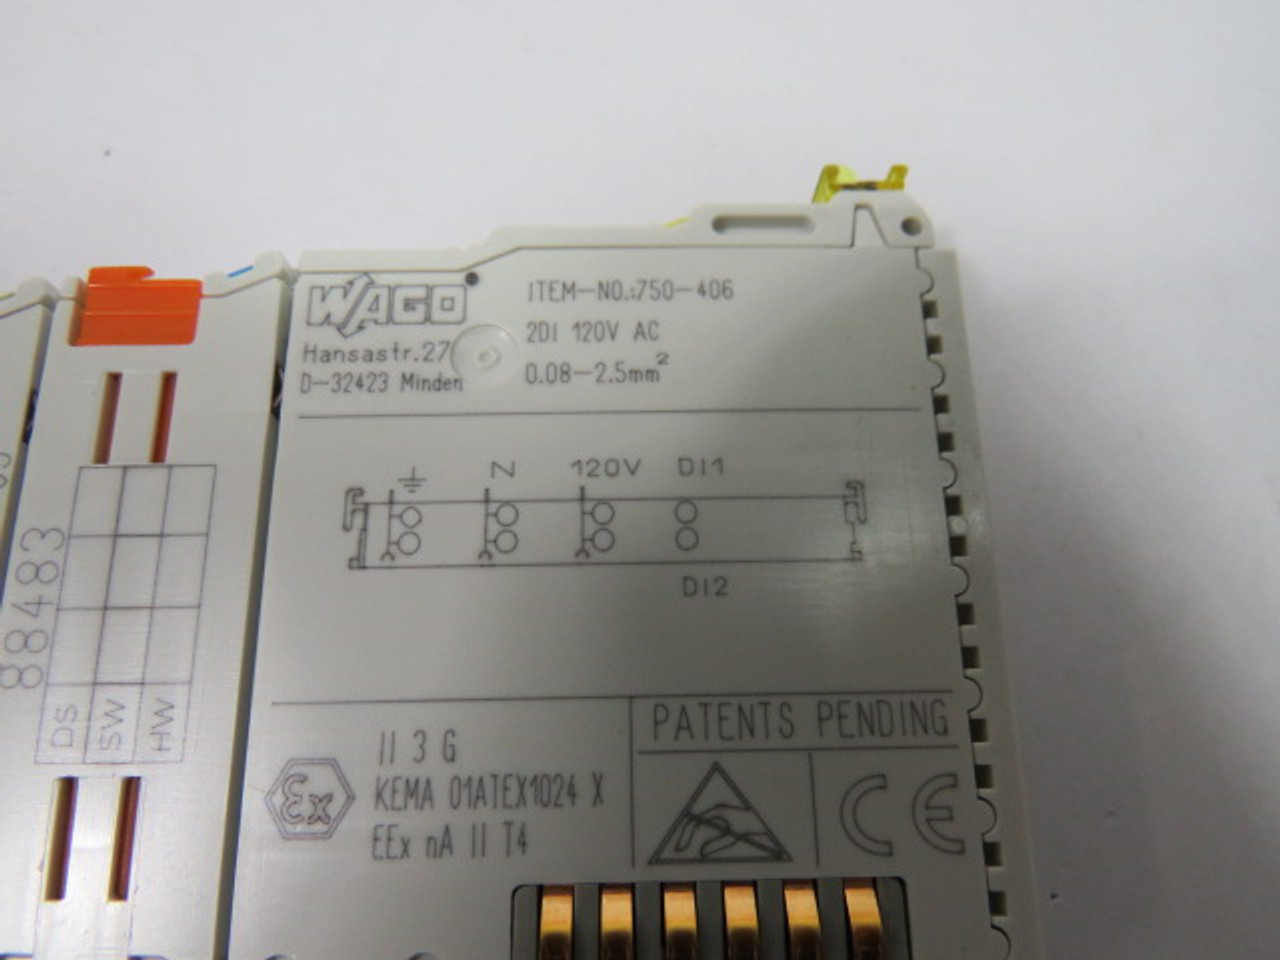 Wago 750-406 2 Channel Digital Input Module 120VAC USED